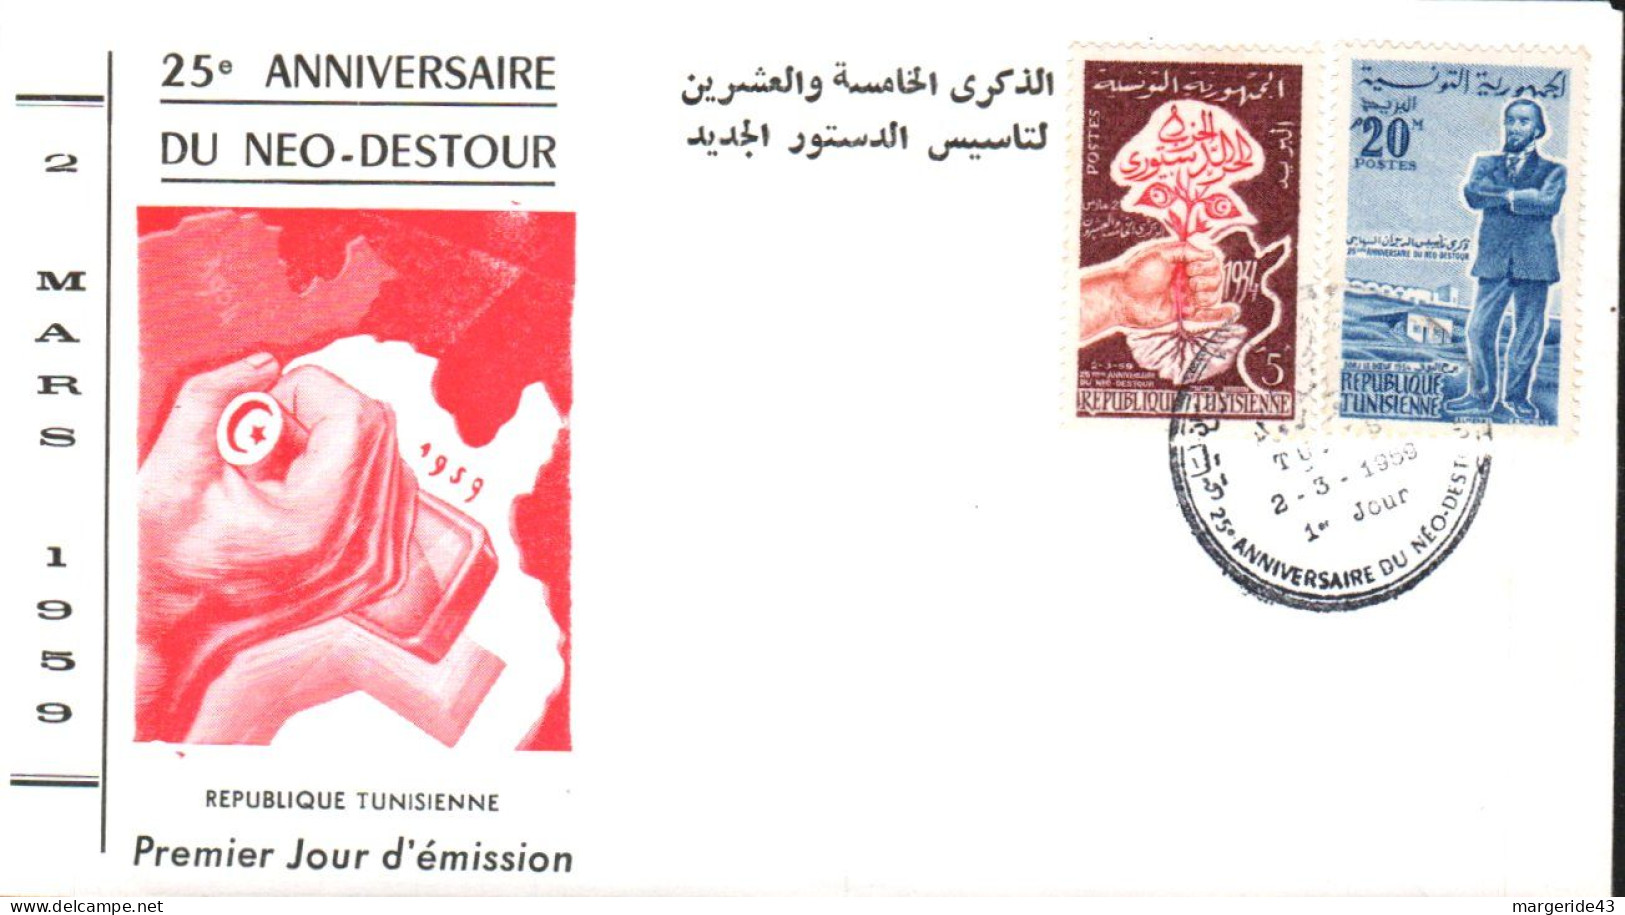 TUNISIE FDC 1959 25 ANS DU NEO DESTOUR - Tunisia